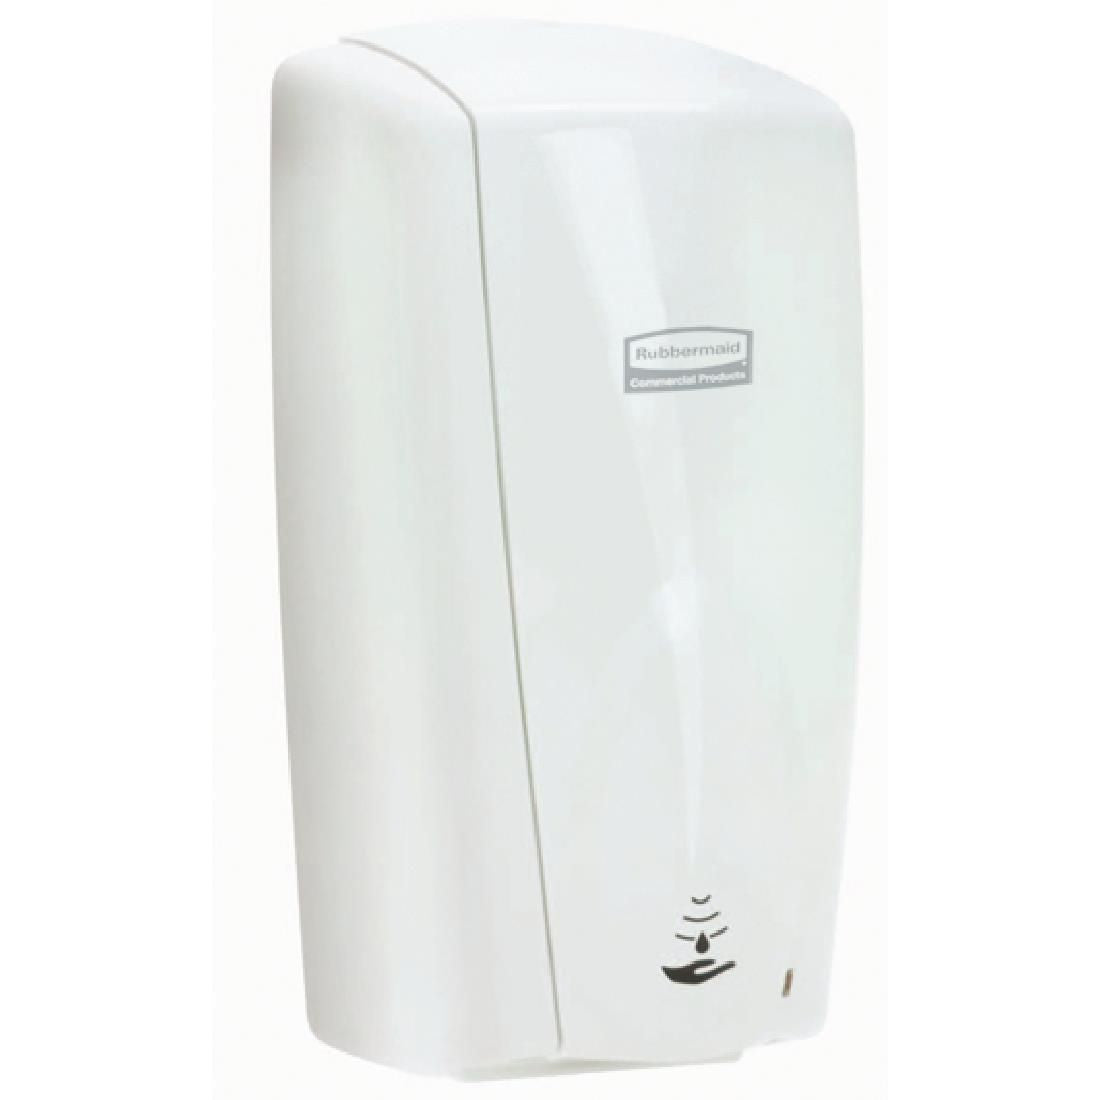 GD846 Rubbermaid Automatic AutoFoam Hand Soap Dispenser 1.1Ltr White